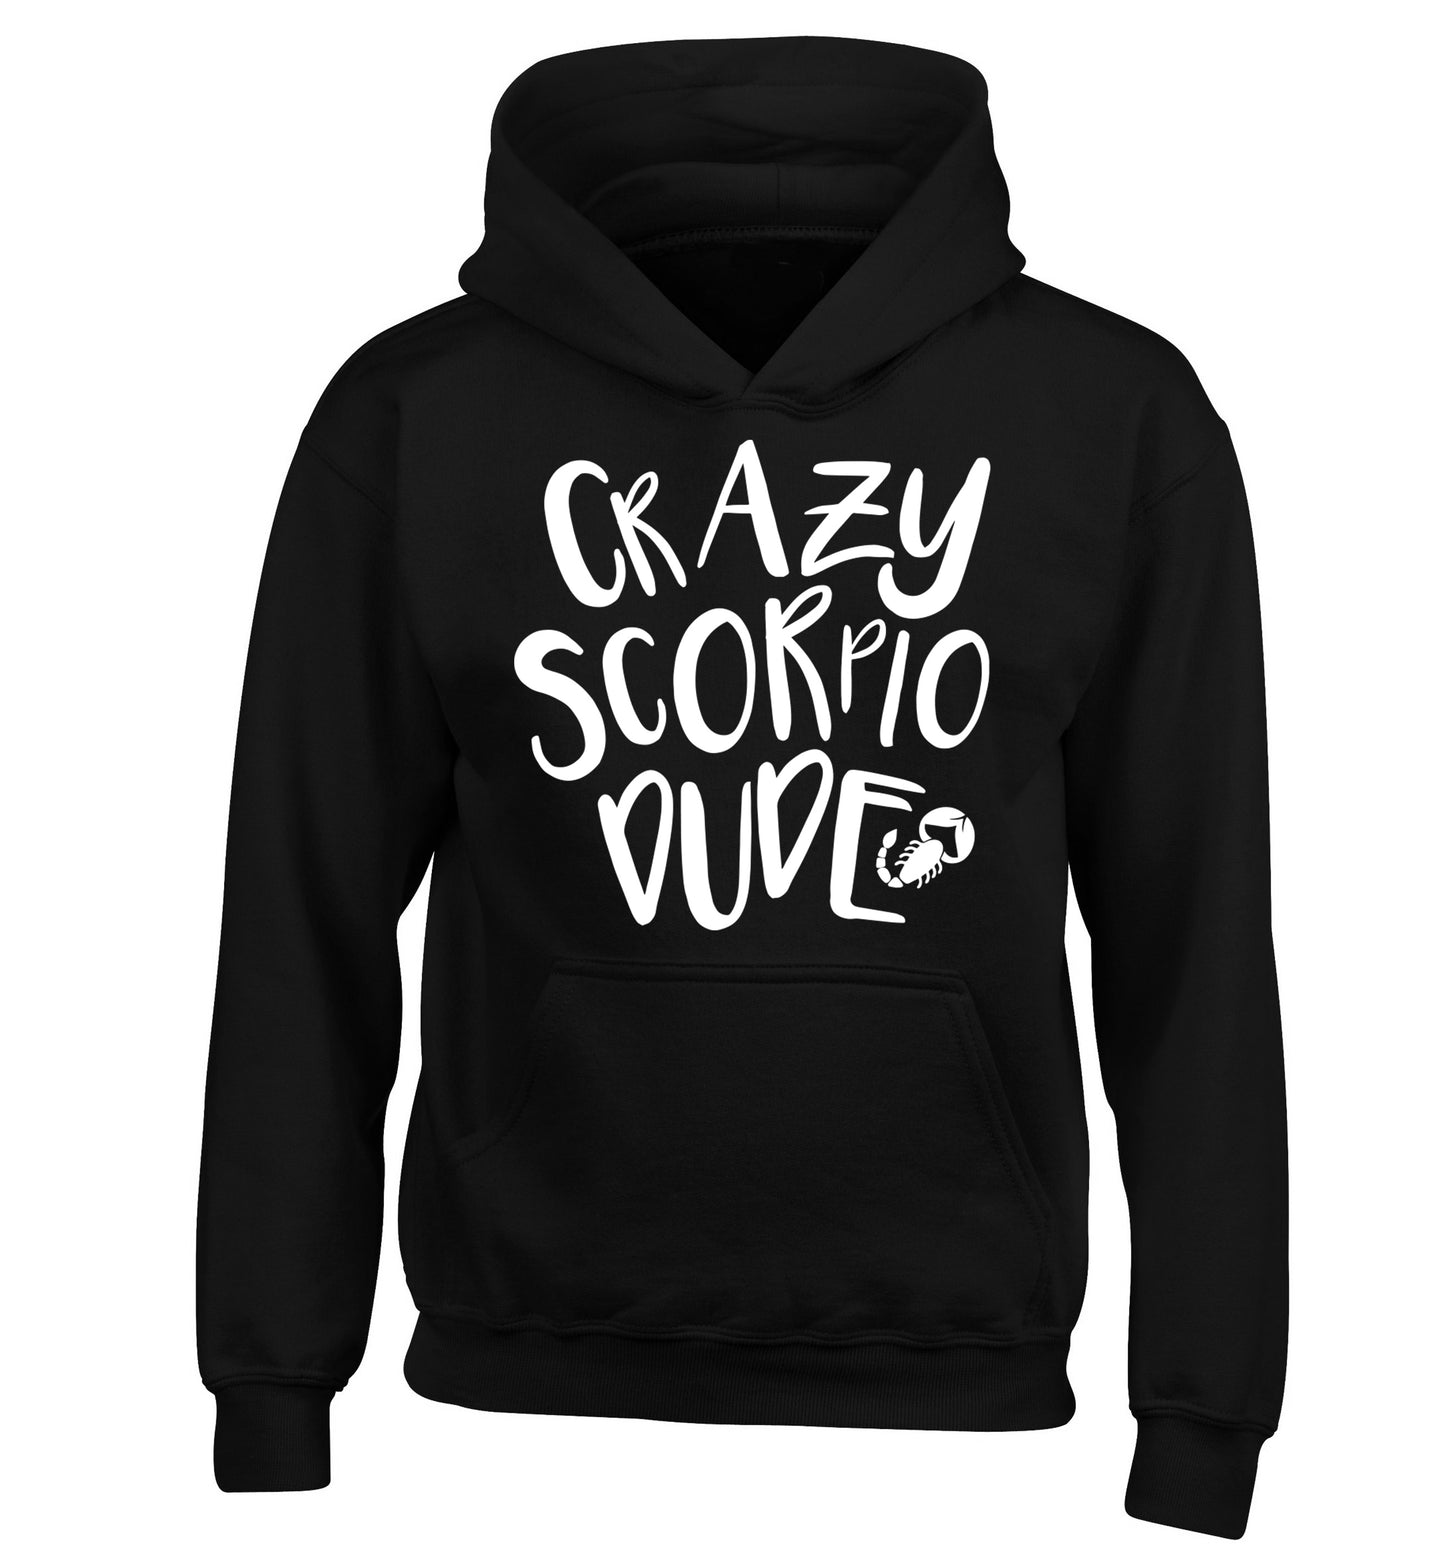 Crazy scorpio dude children's black hoodie 12-13 Years